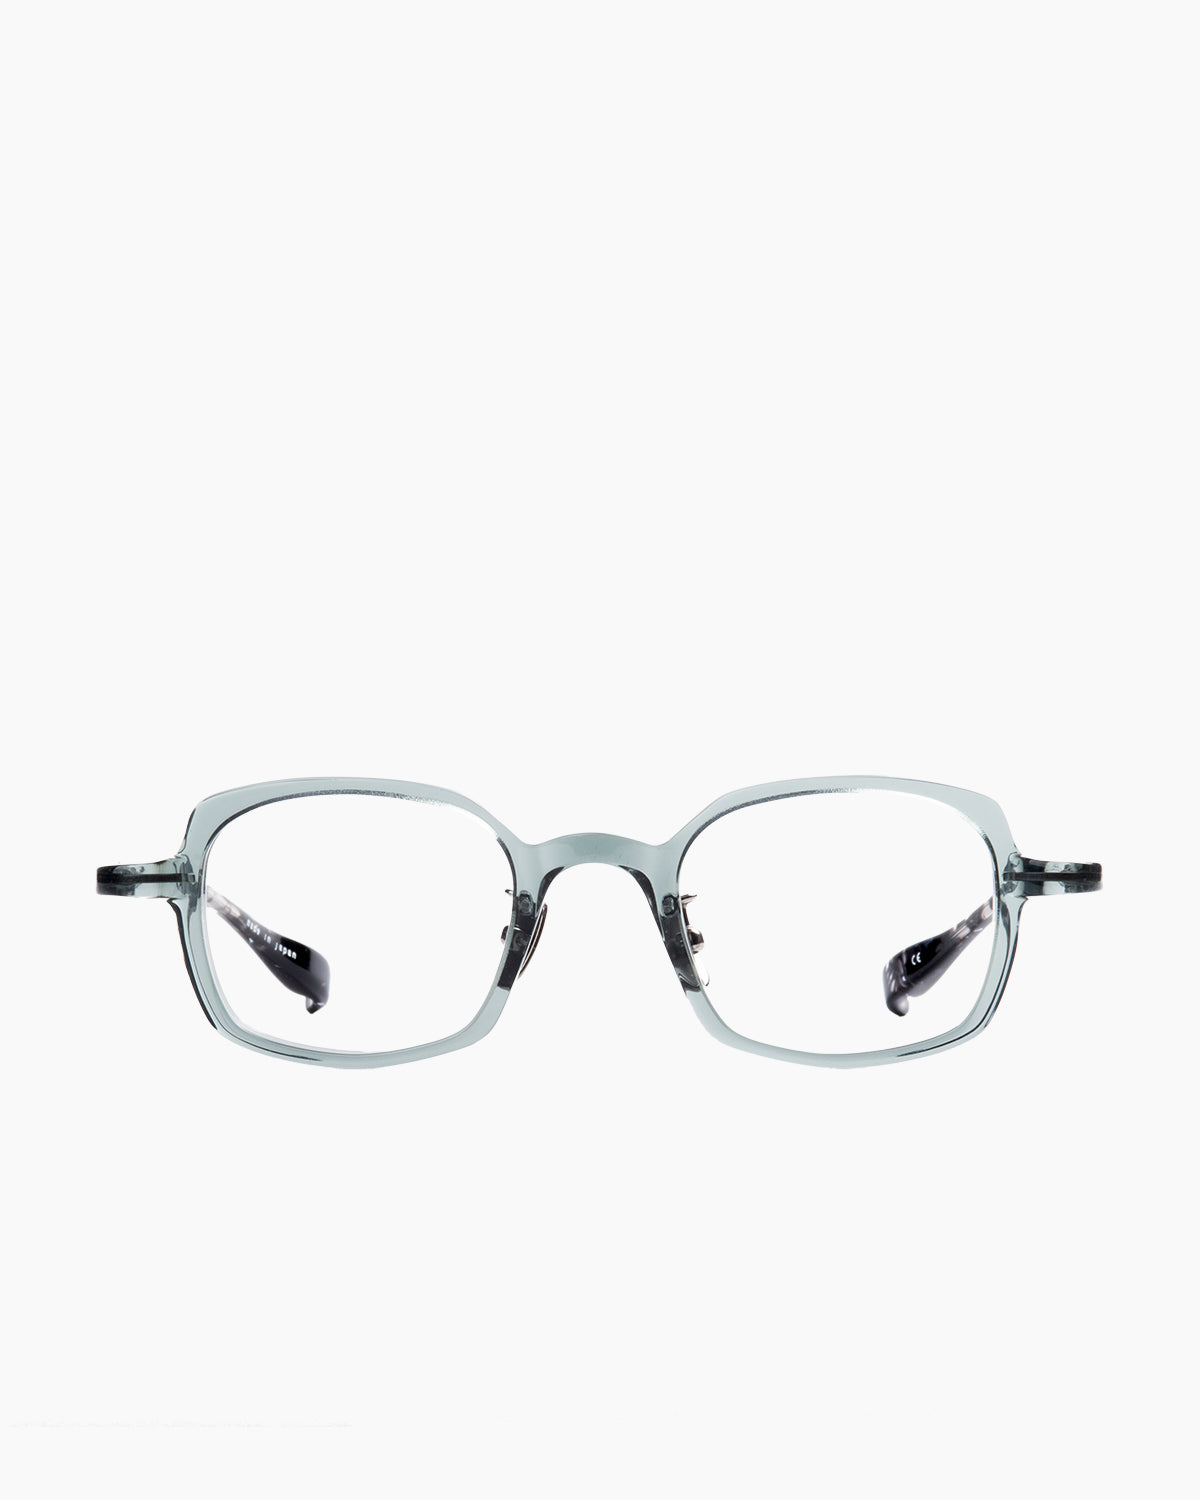 Factory 900 - Ai - 591 | Bar à lunettes:  Marie-Sophie Dion